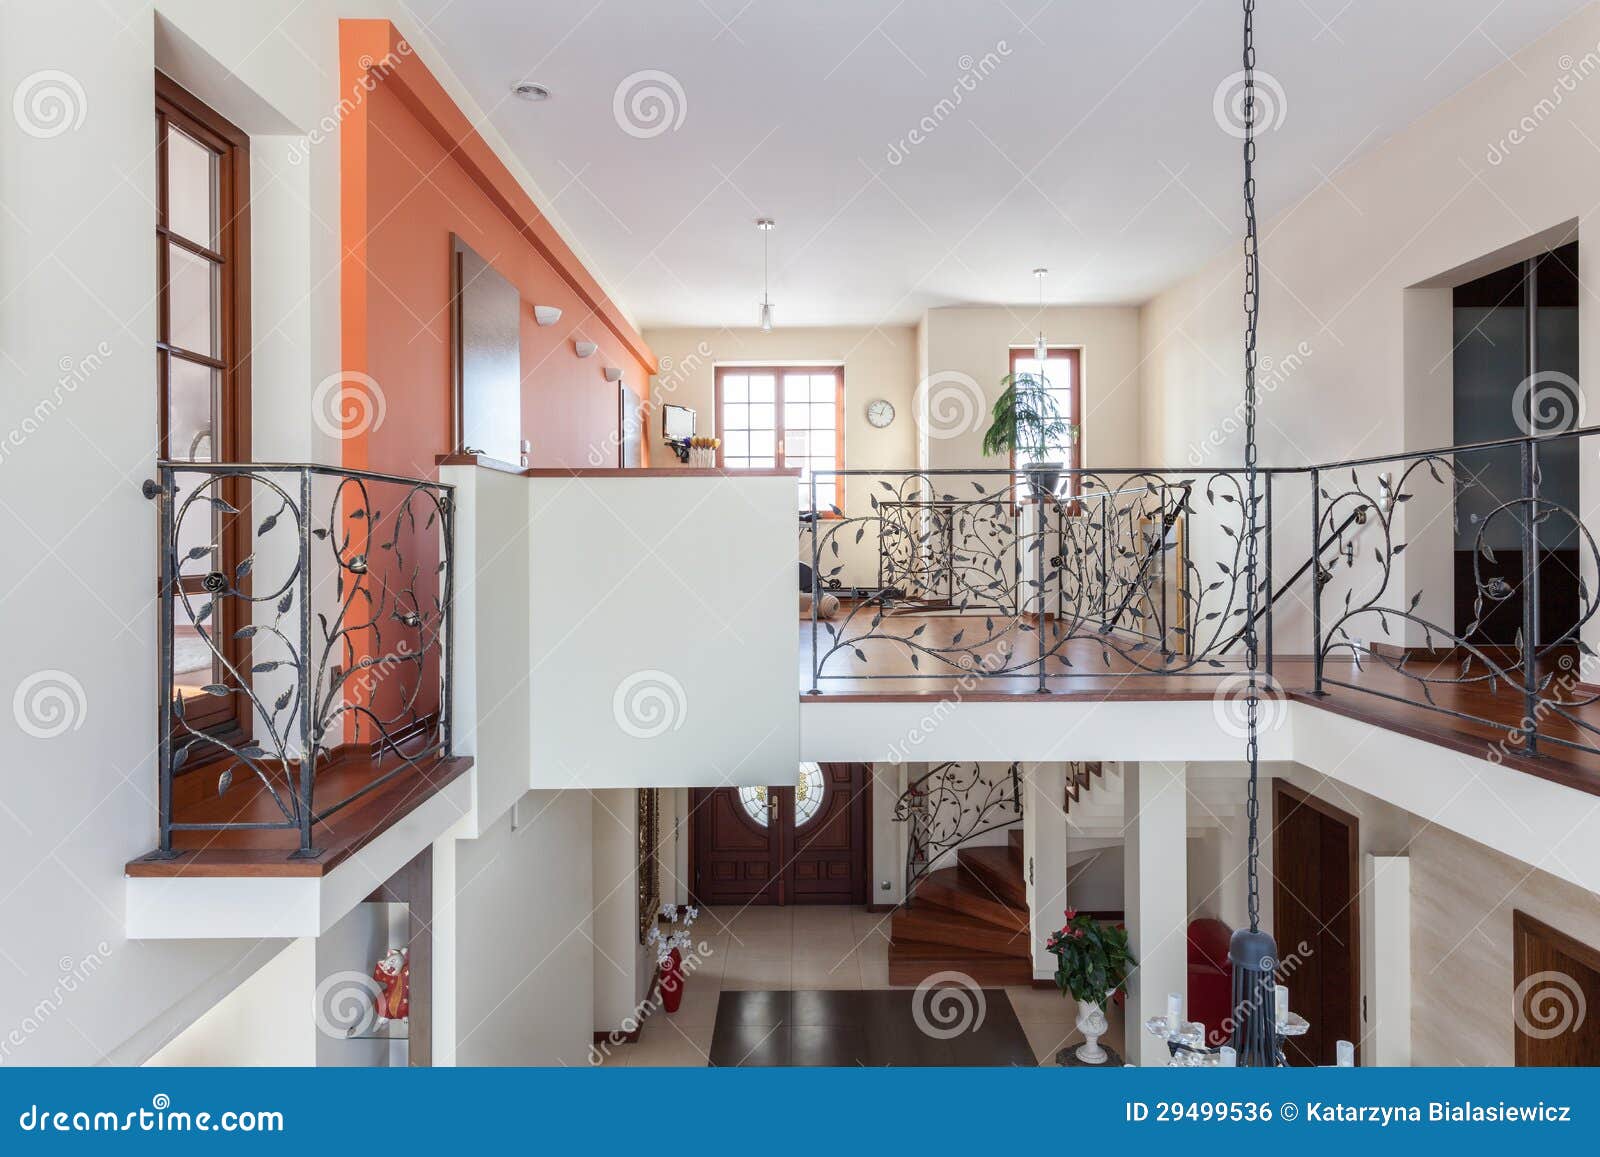 Classy House - Two-storey Home Stock Photo - Image of indoor, door: 29499536